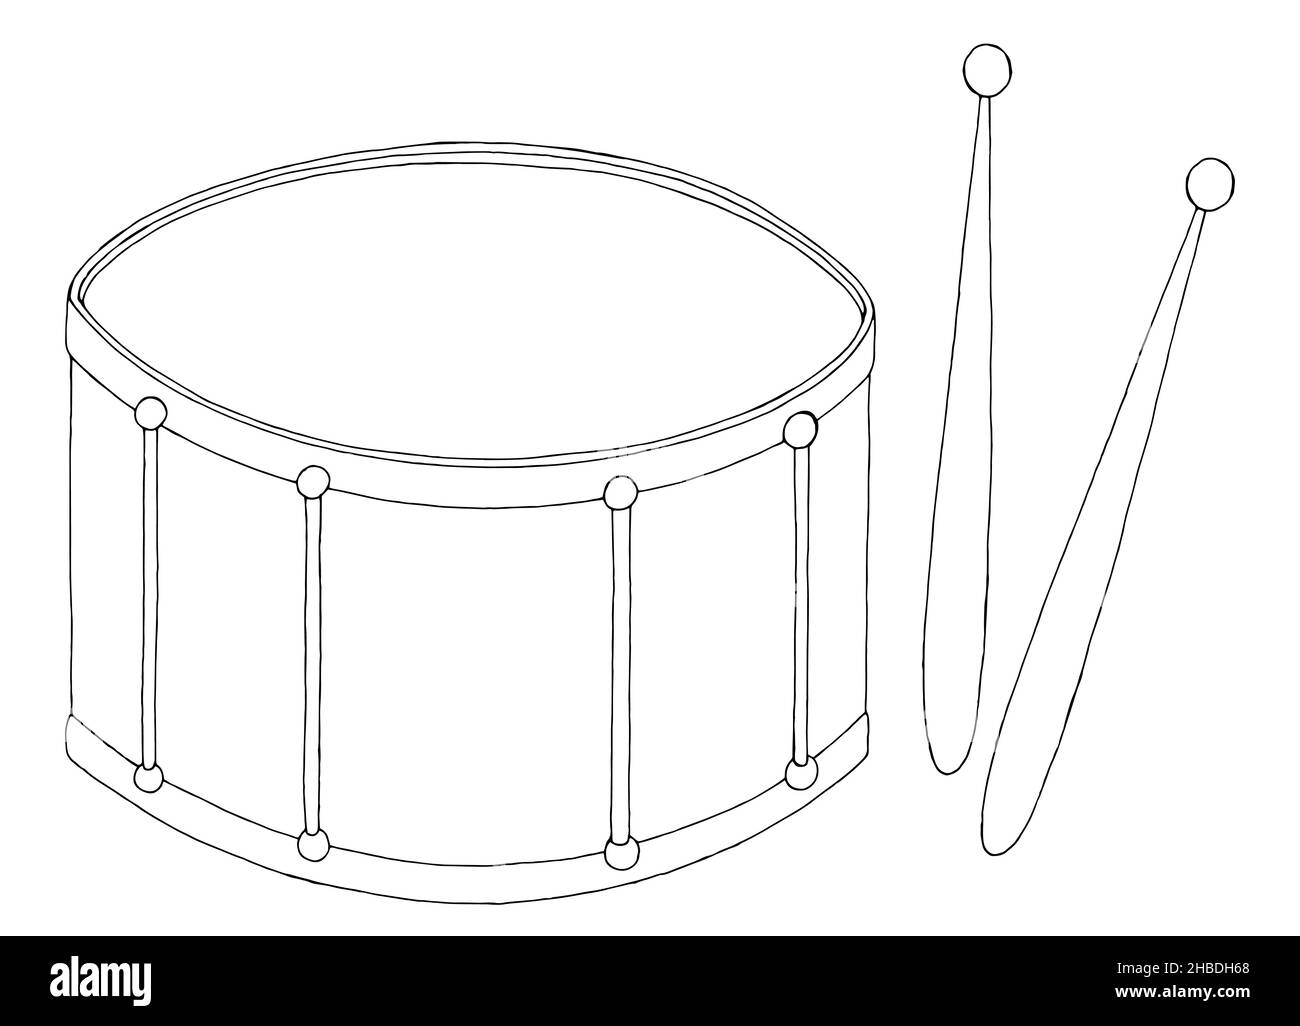 Drum graphic bianco nero isolato vettore di illustrazione di schizzo Illustrazione Vettoriale